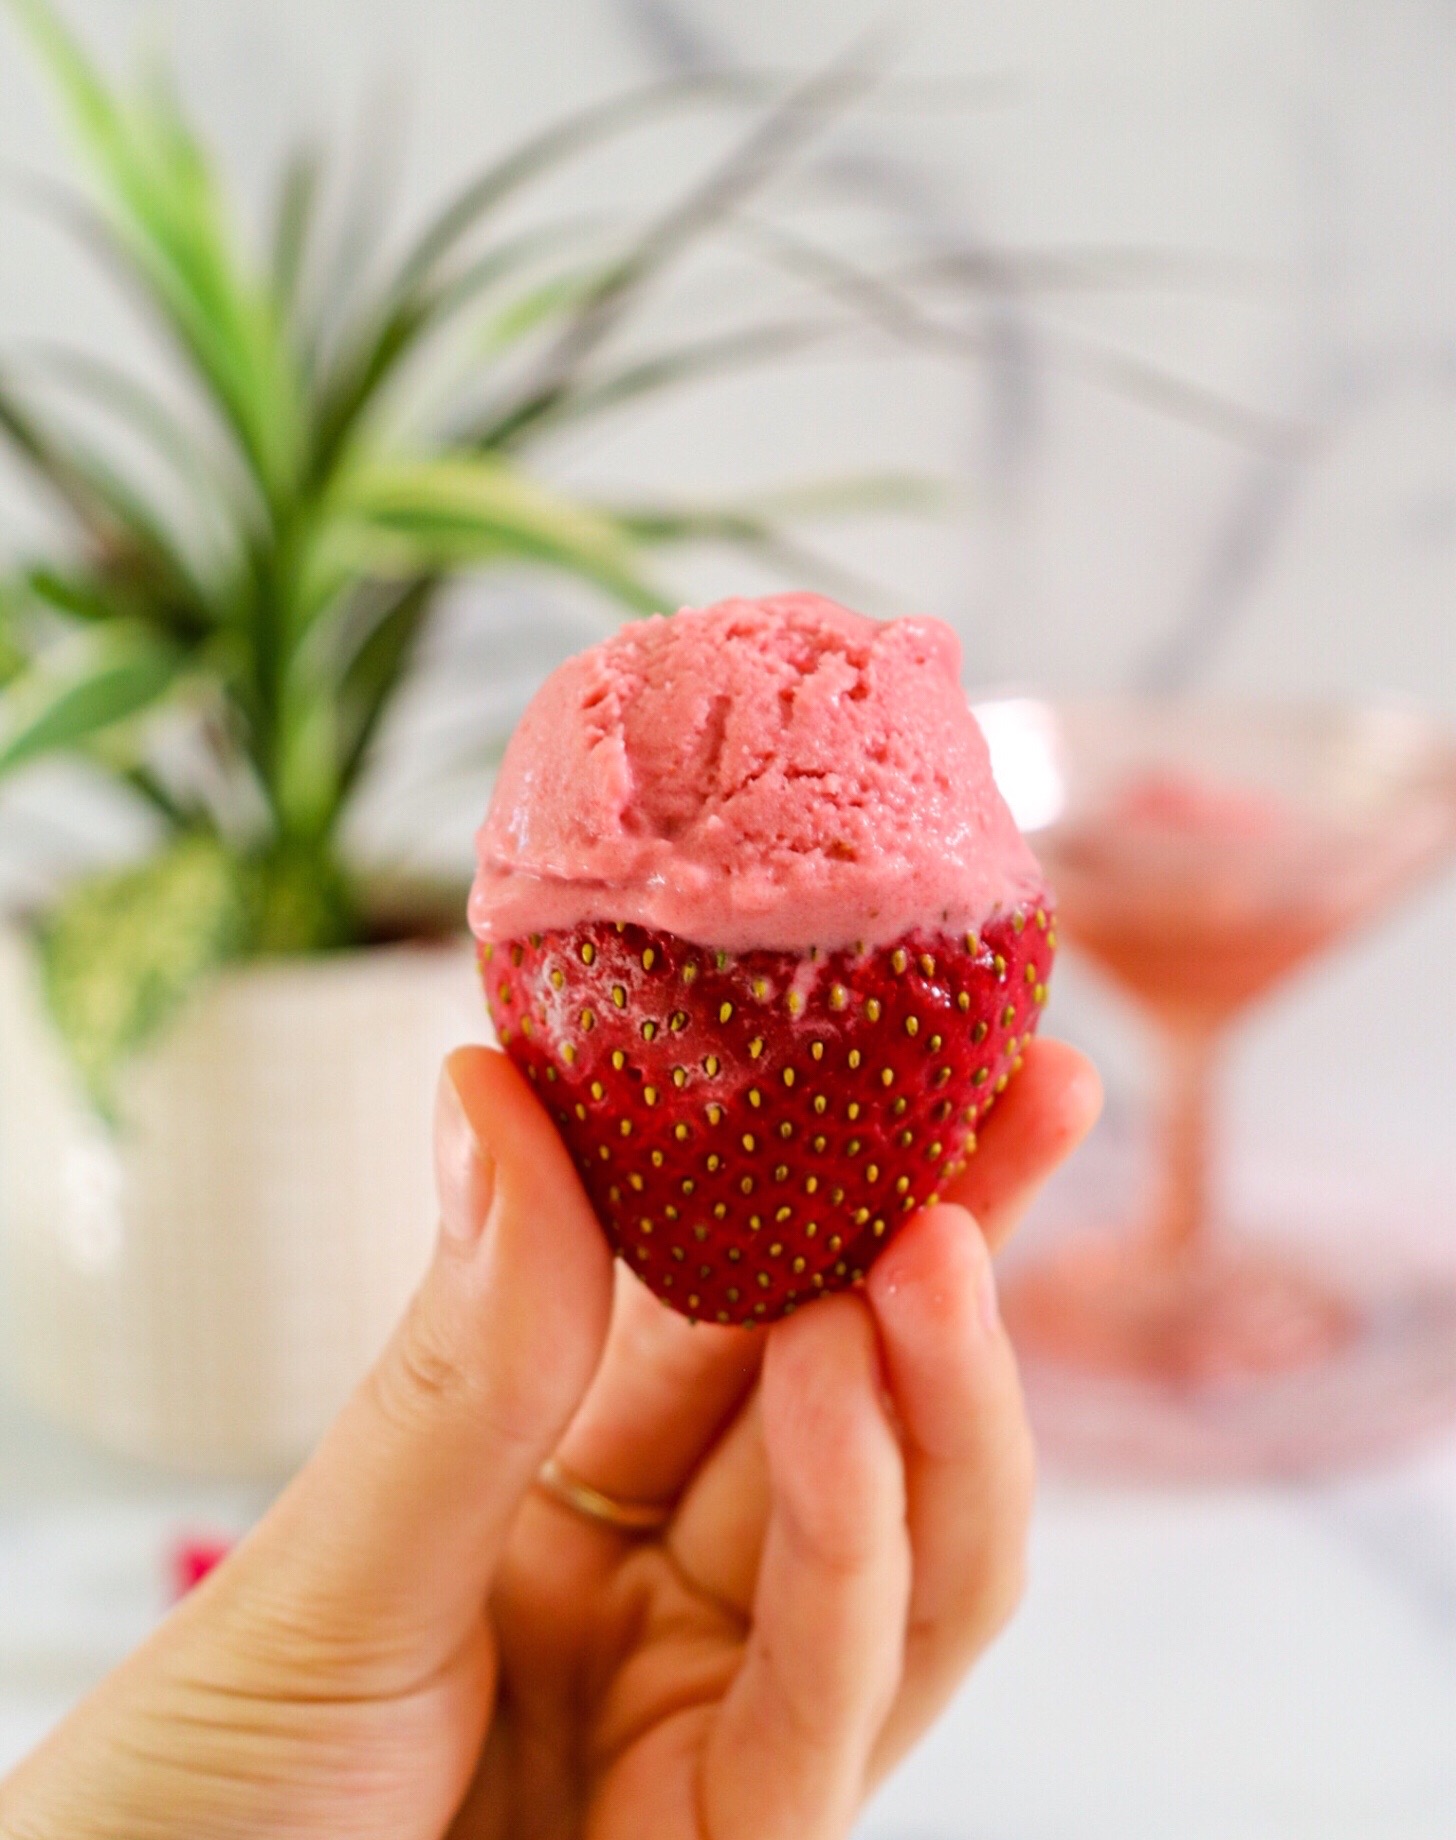 Homemade Vegan Strawberry Ice Cream - Daring Kitchen